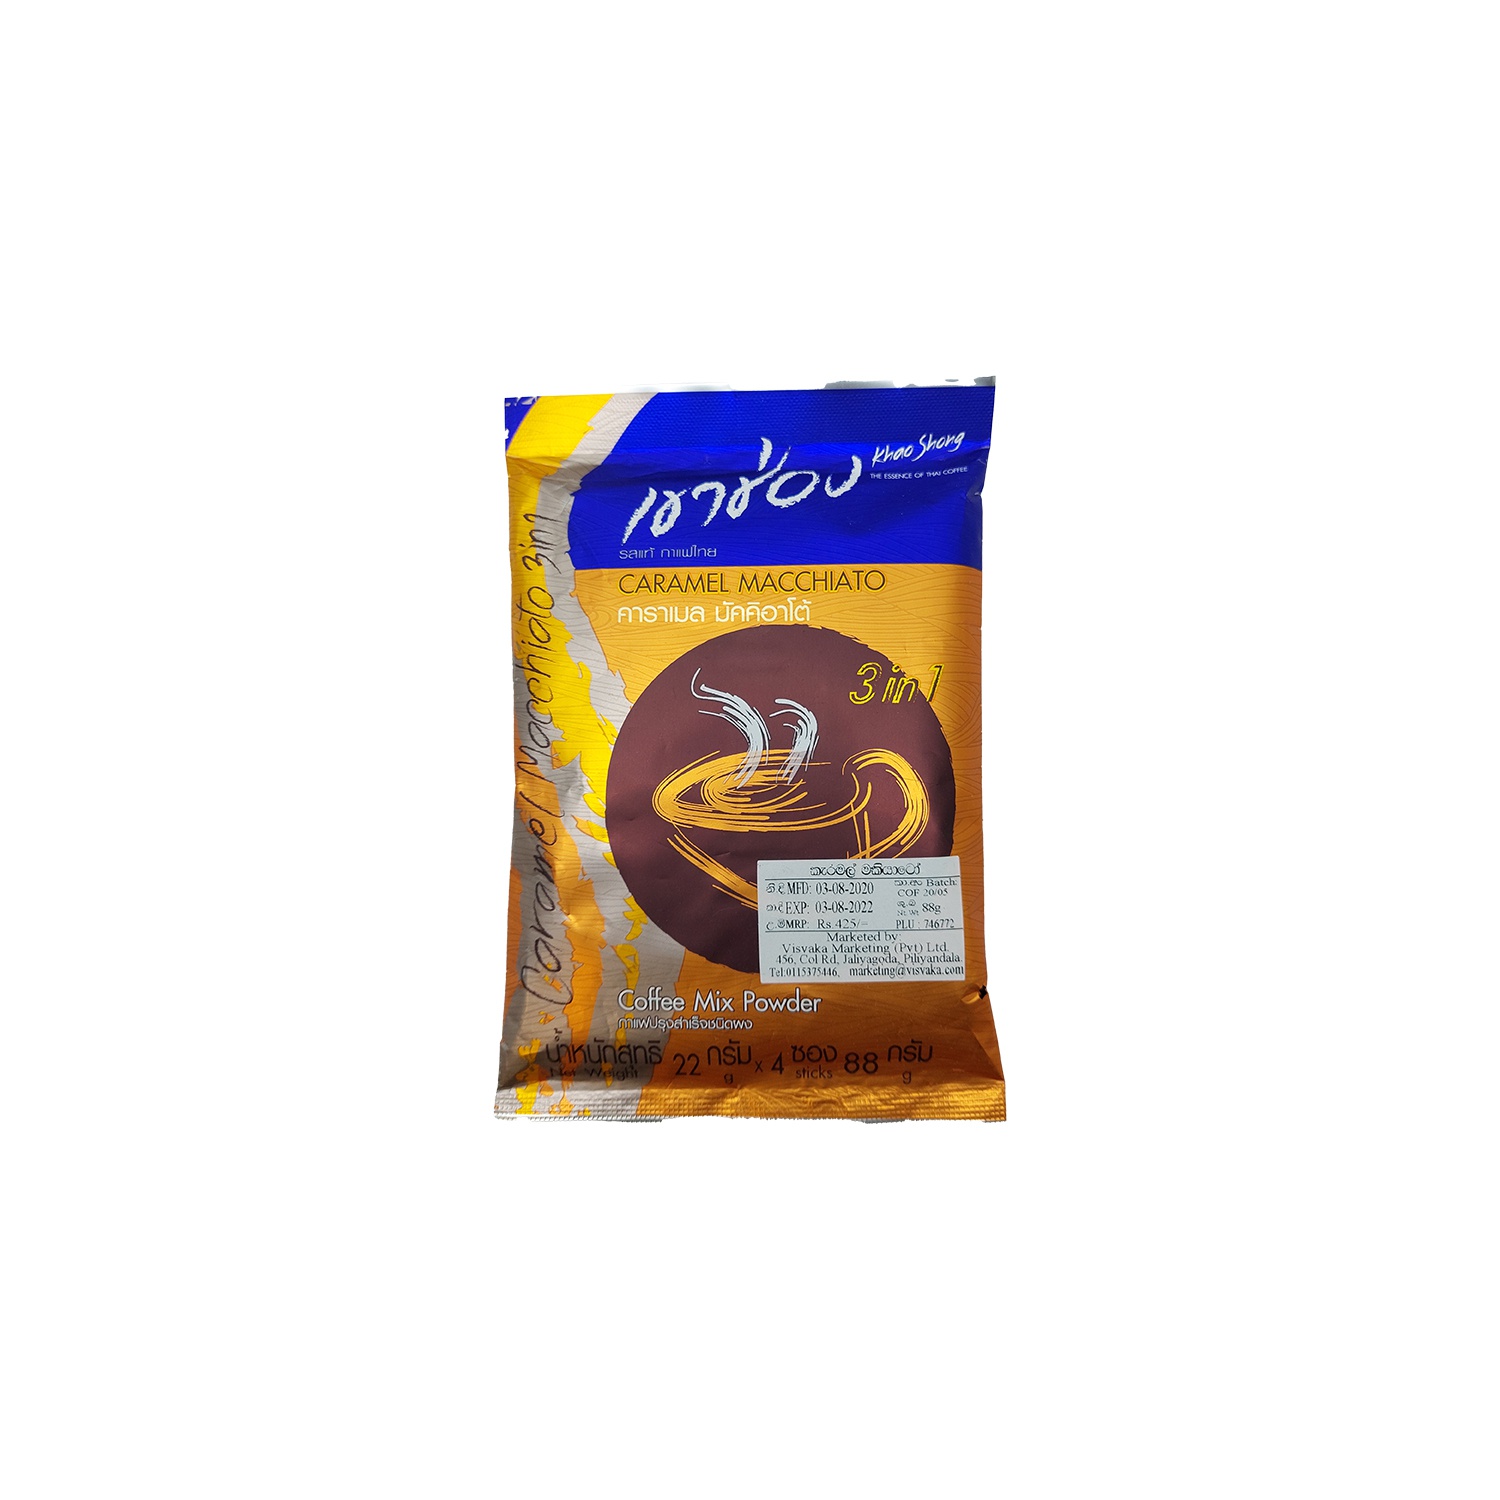 Khao Shong 3 In 1 Caramel Macchiato 88G - KHAO SHONG - Coffee - in Sri Lanka